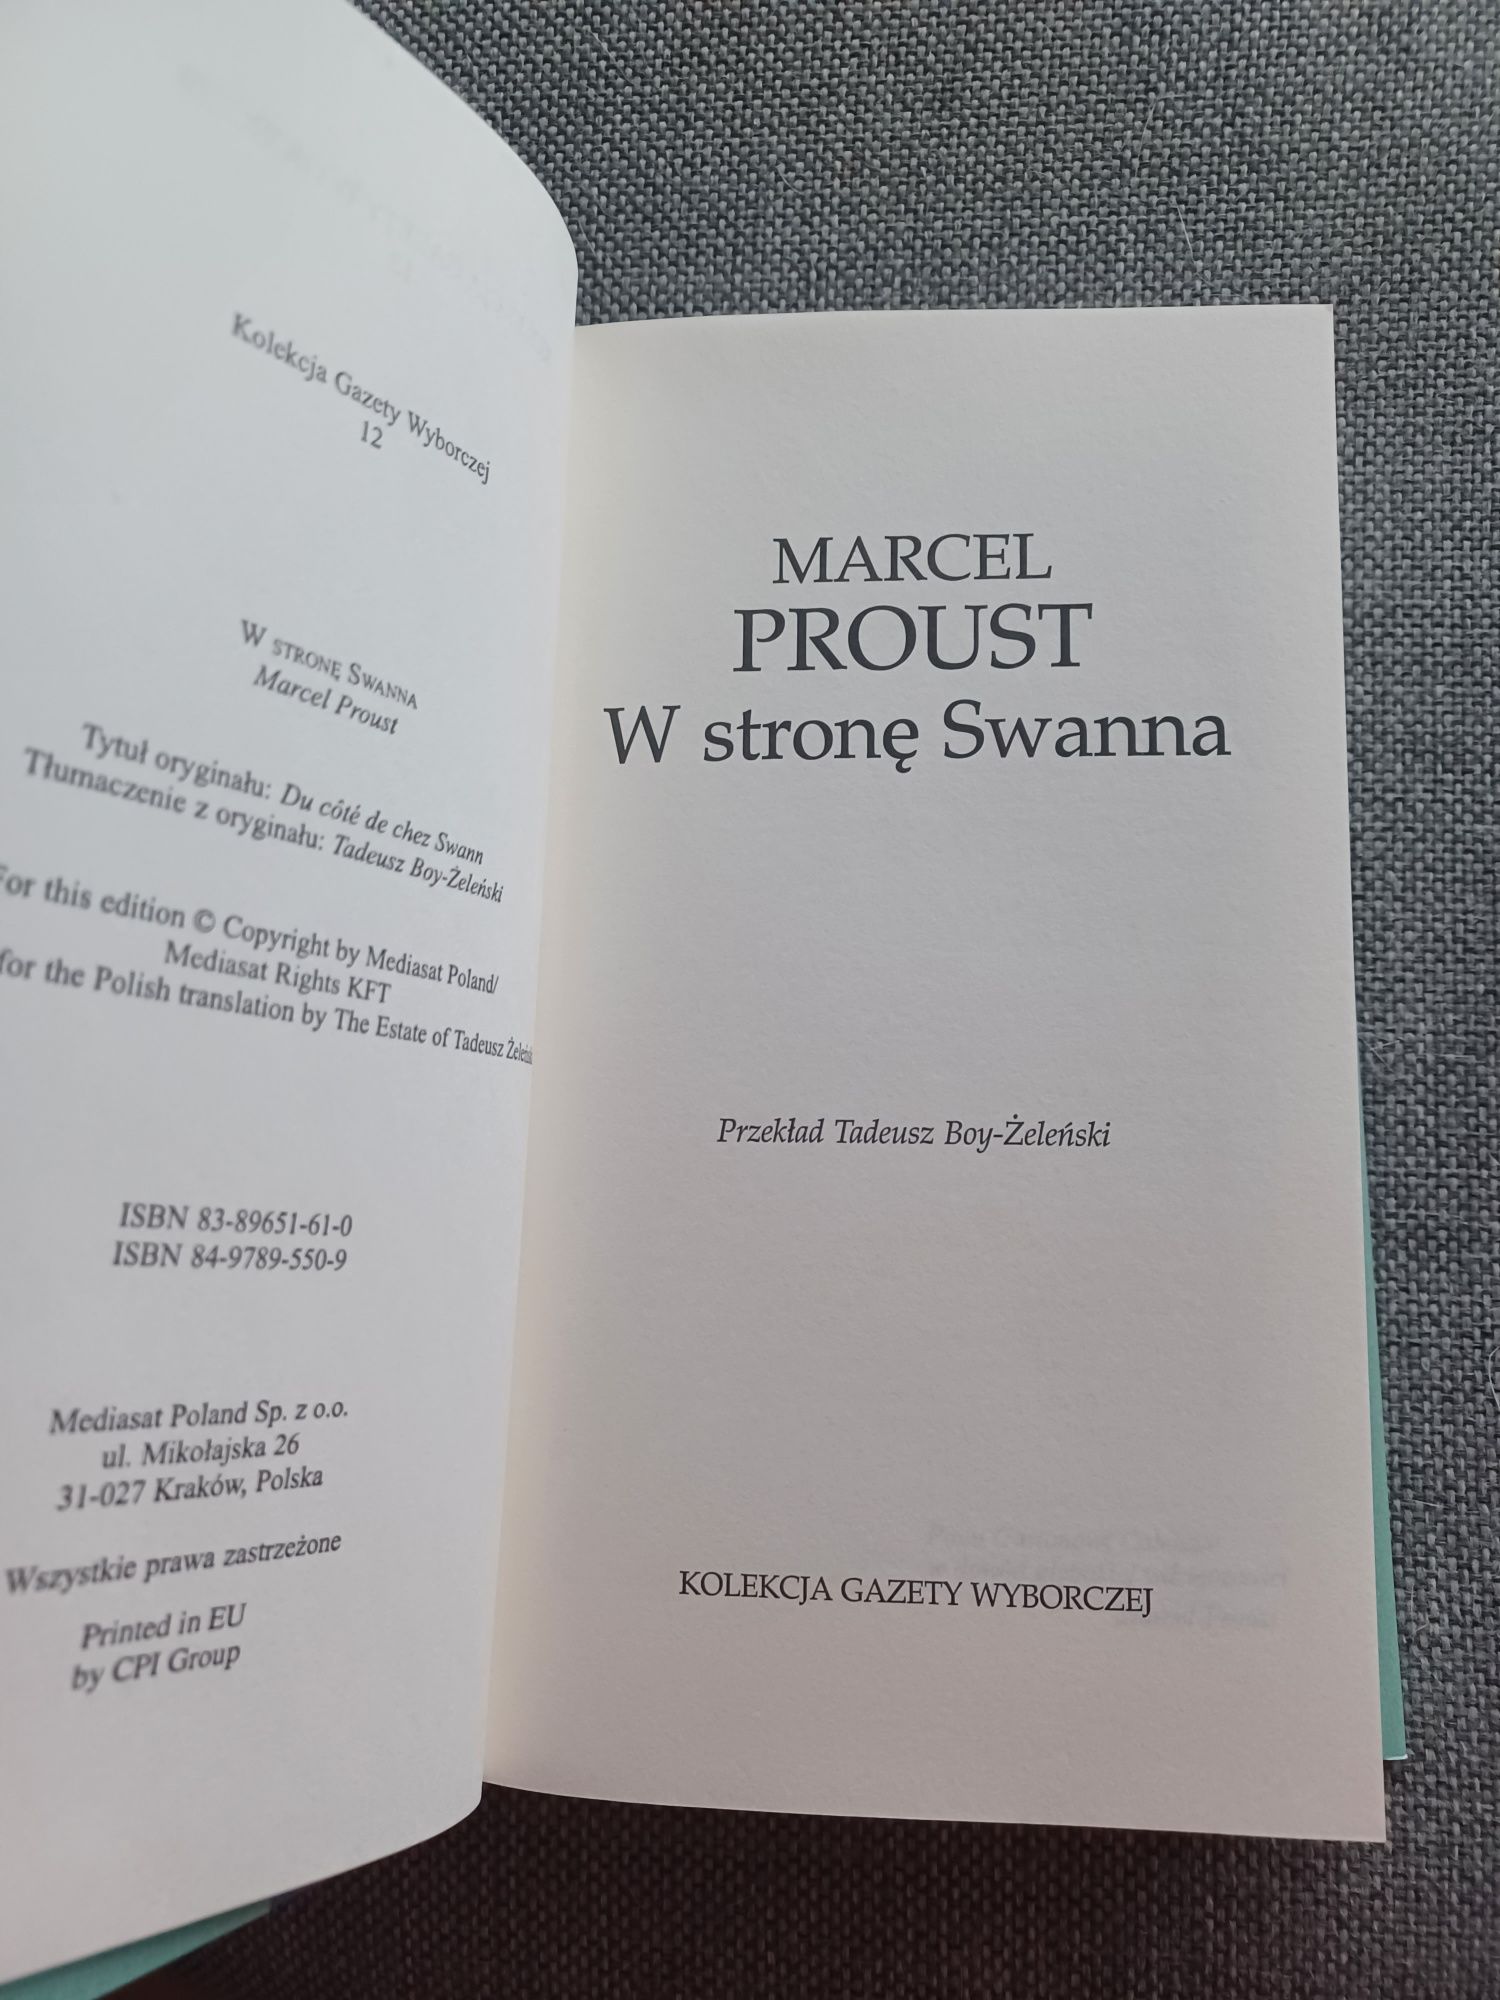 Marcel Proust W stronę Swanna Kolekcja Gazety Wyborczej nr 12